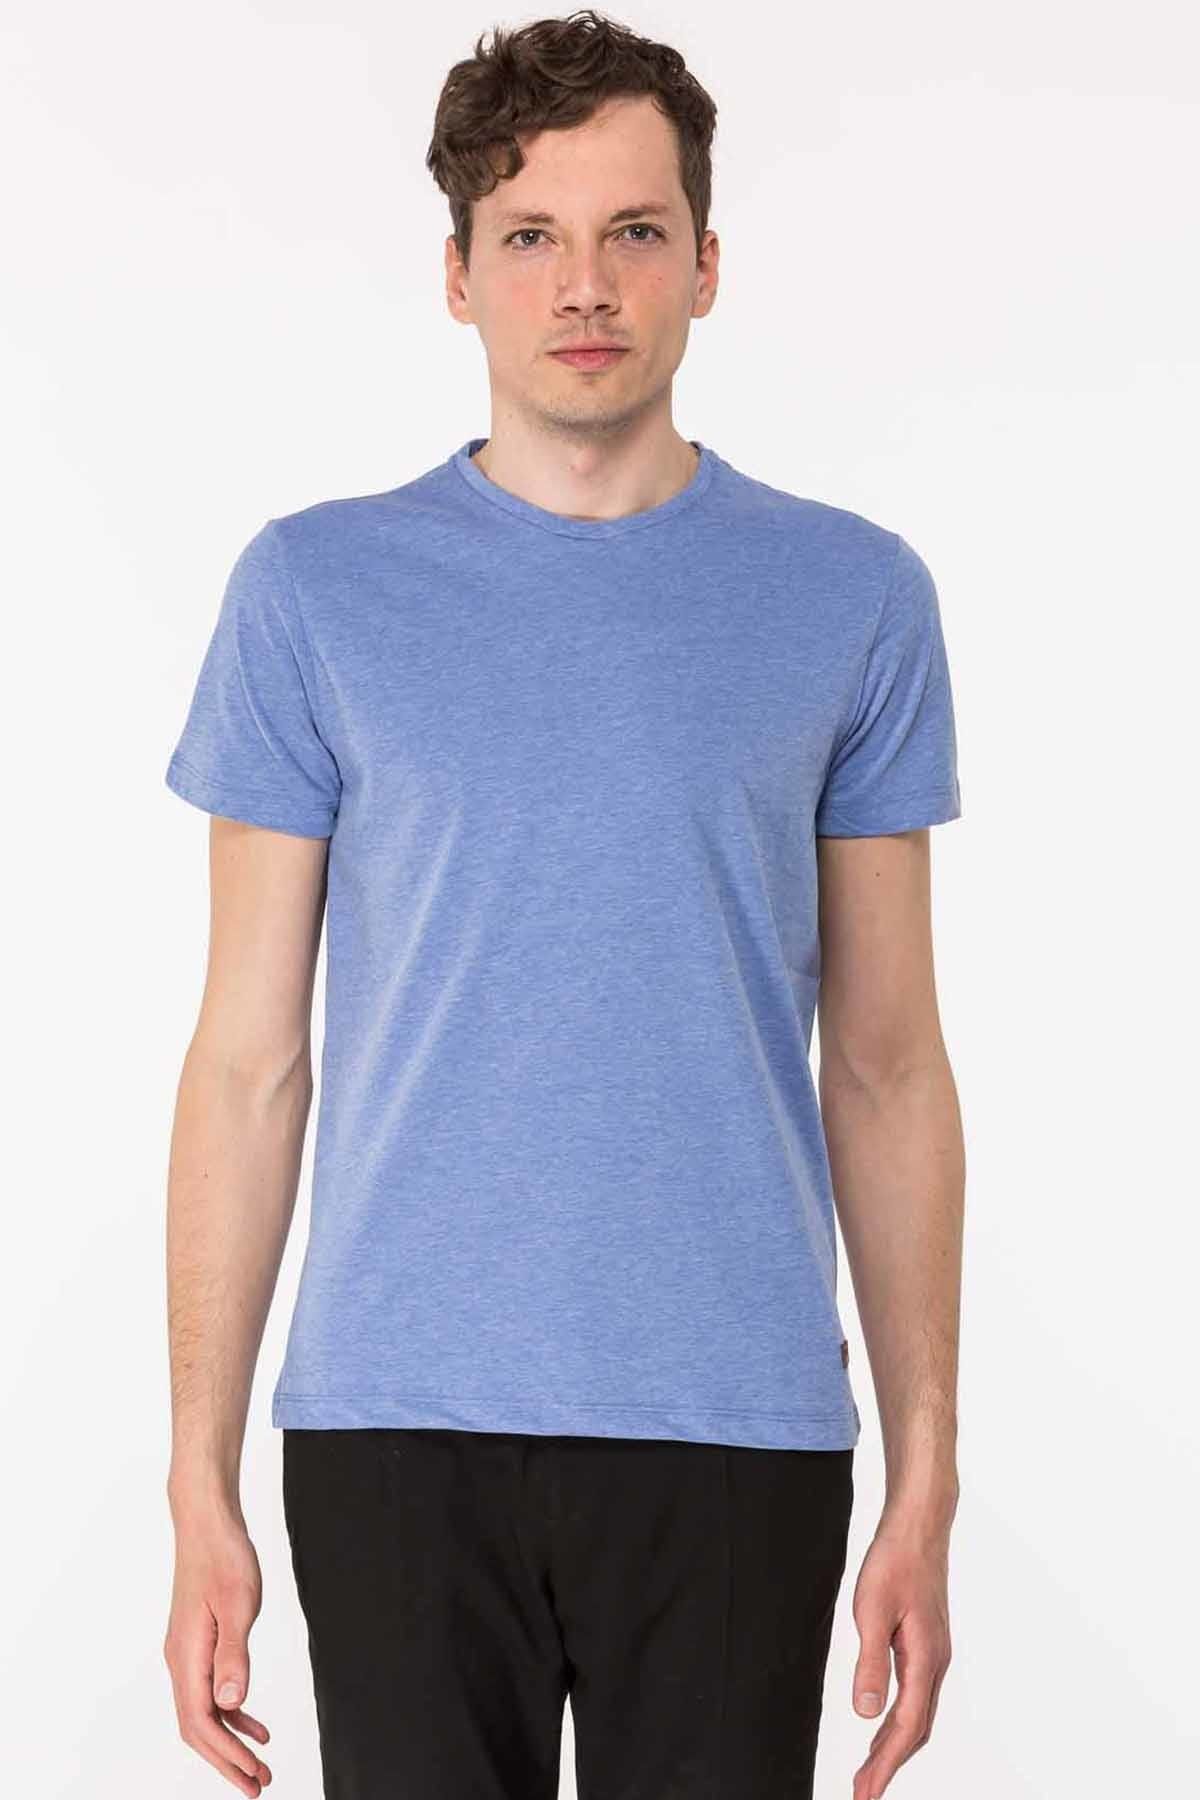 Slazenger Kaleo Erkek T-shirt Mavi St19te023